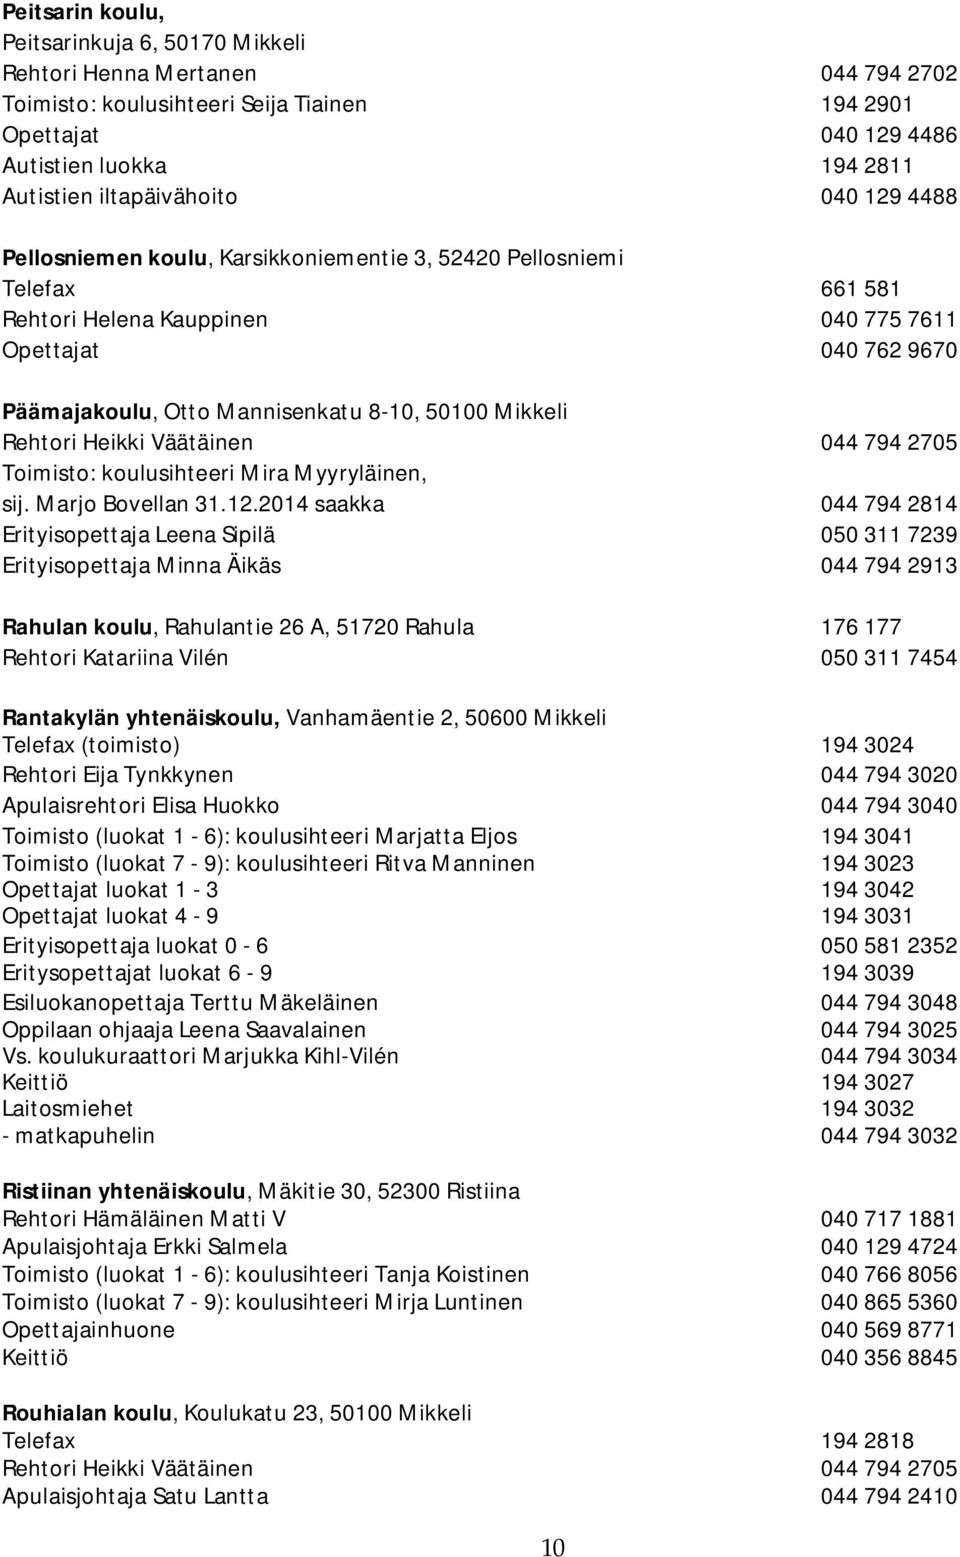 8-10, 50100 Mikkeli Rehtori Heikki Väätäinen 044 794 2705 Toimisto: koulusihteeri Mira Myyryläinen, sij. Marjo Bovellan 31.12.